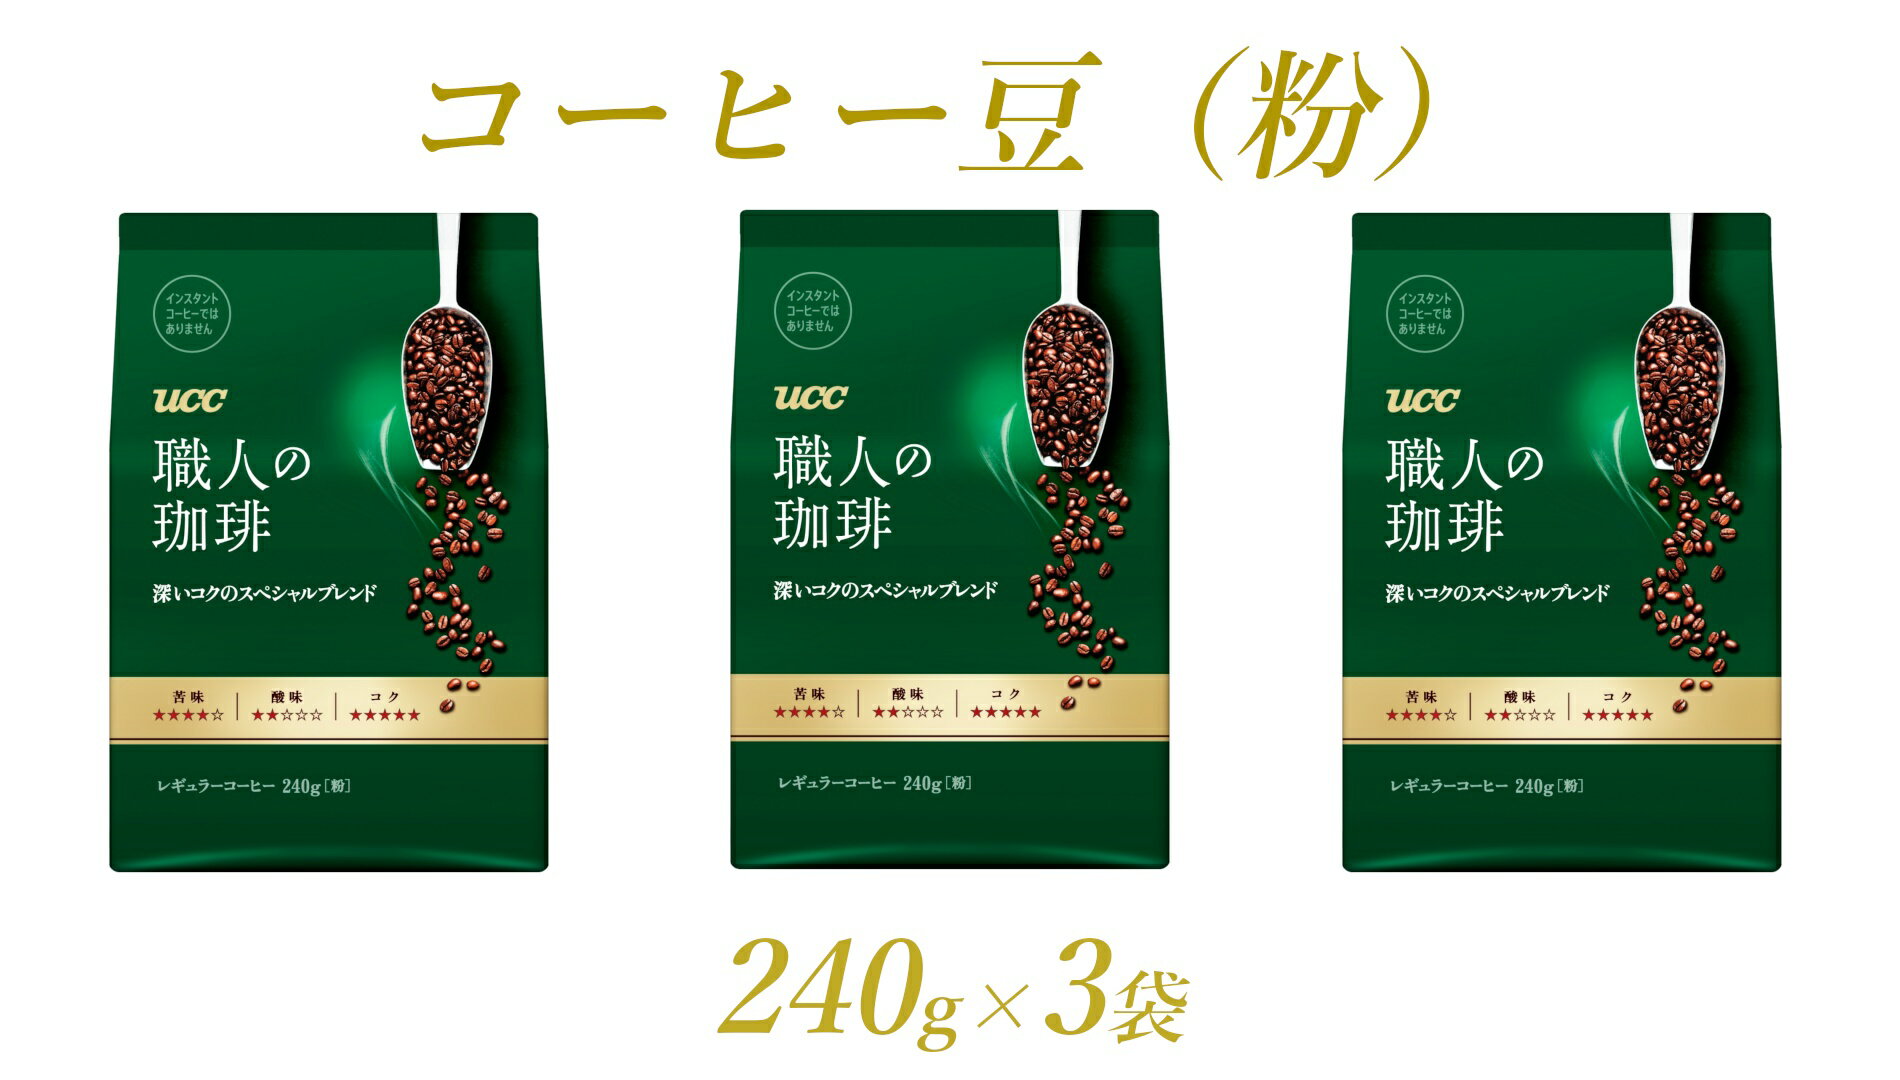 UCC 職人の珈琲 コーヒー豆(粉)深いコクのスペシャルブレンド 240g×3袋